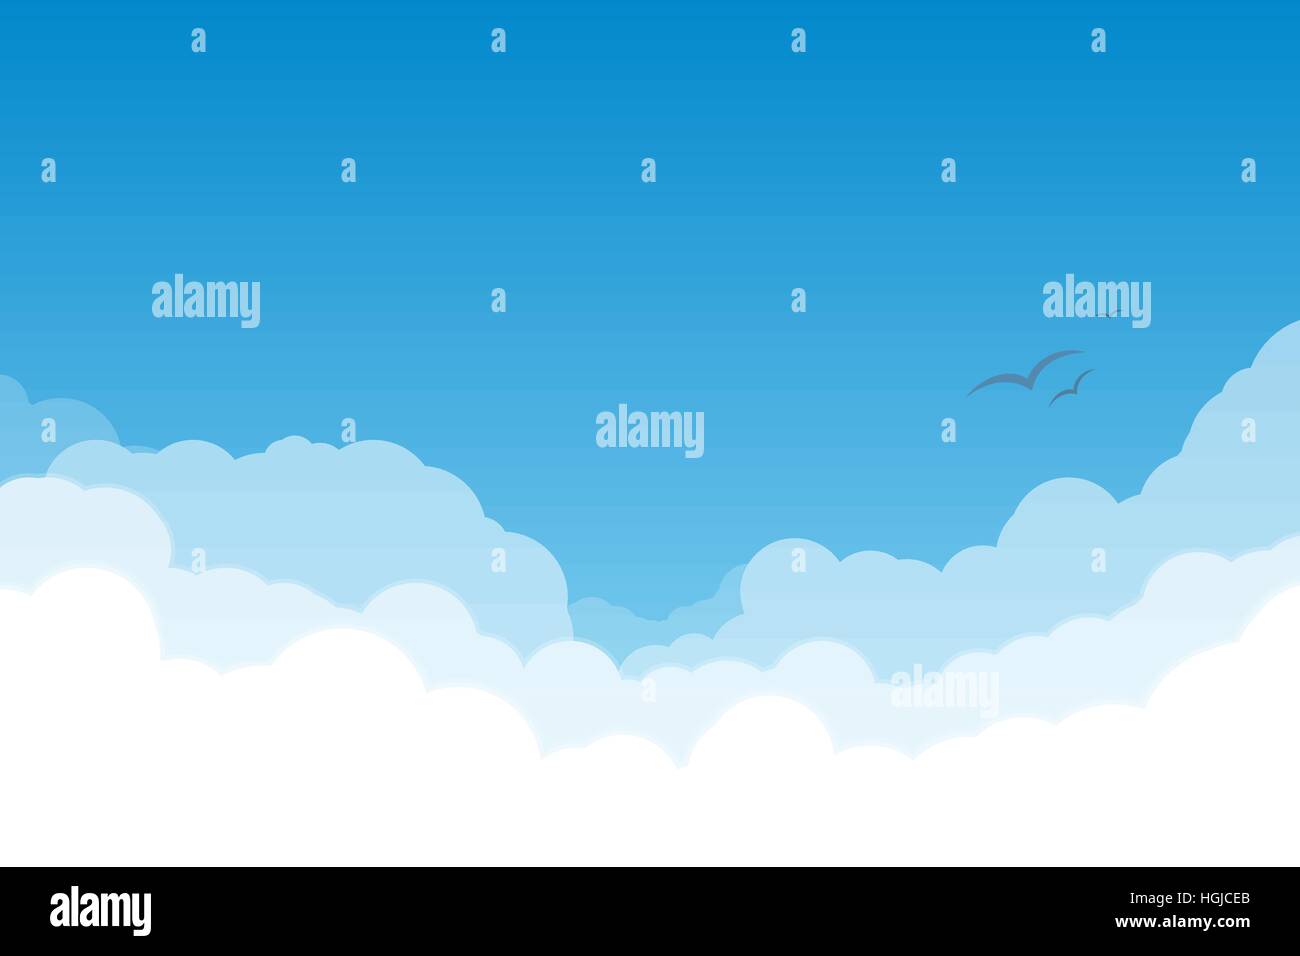 Weiße und transparente Wolken am blauen Himmel mit fliegenden Vögel. Stock Vektor